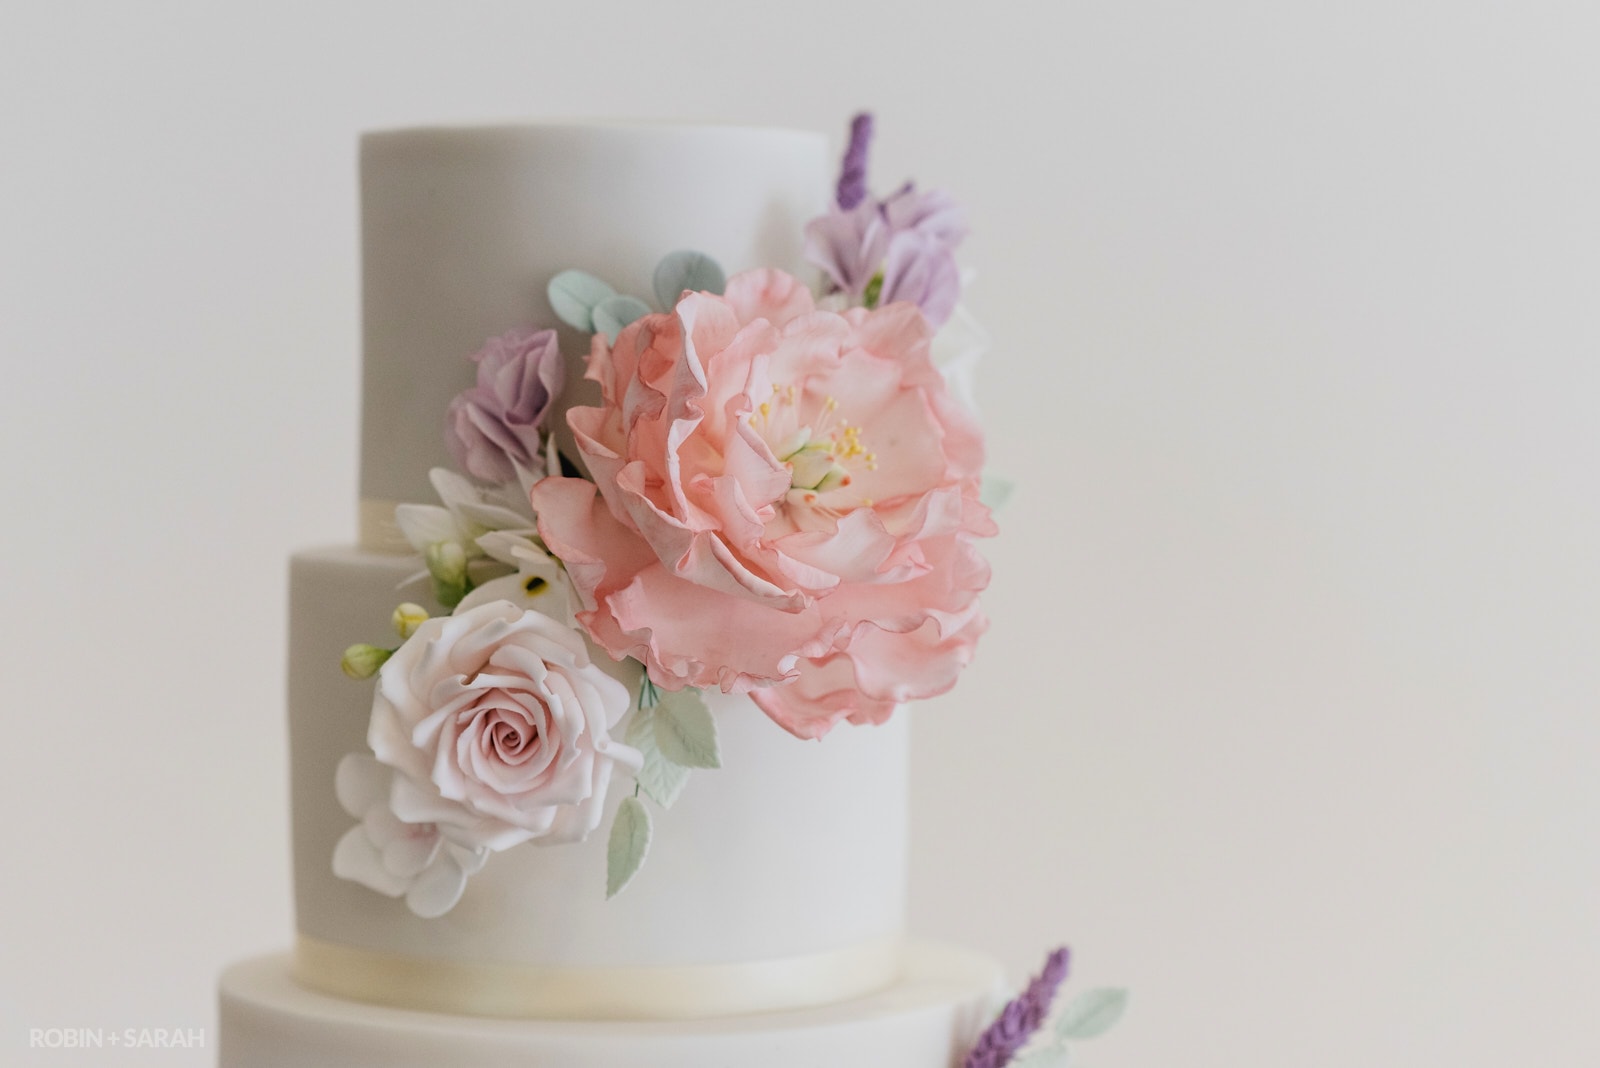 Detail of wedding cake